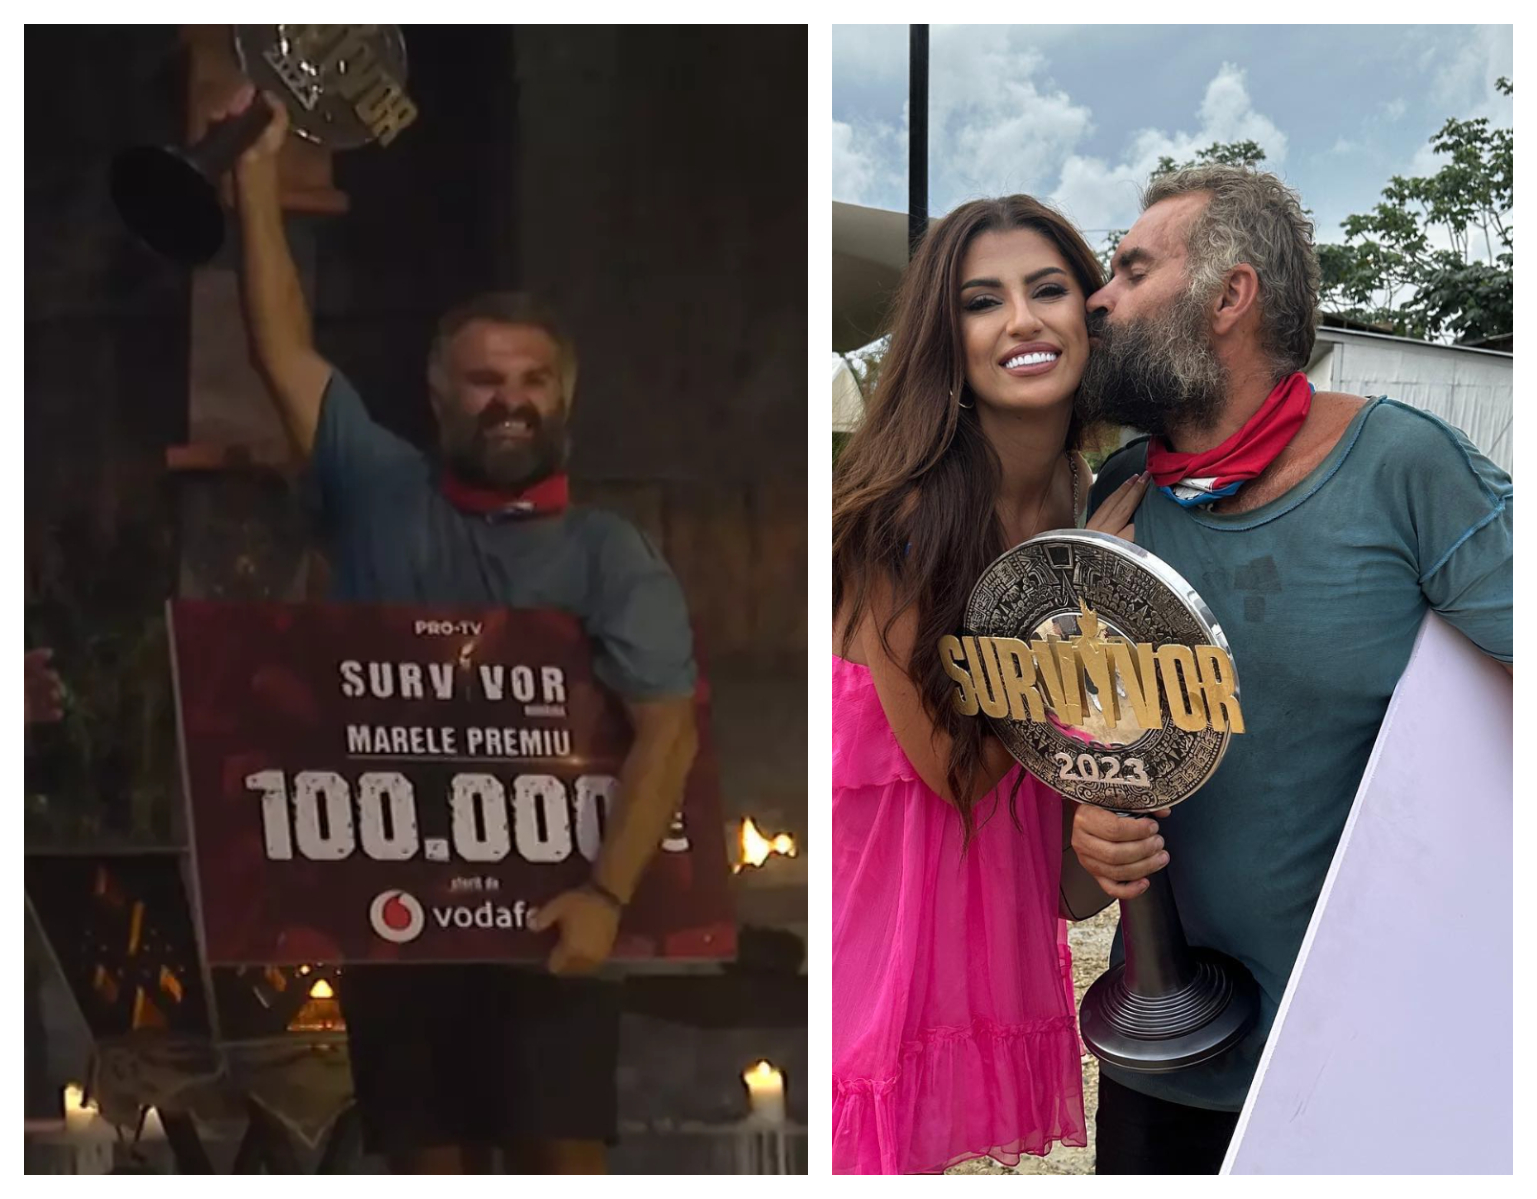 Survivor România și Marele Premiu în valoare de 100.000 de euro a fost câștigat de Dan Ursa. Pro TV este acuzat că a măsluit votingul!